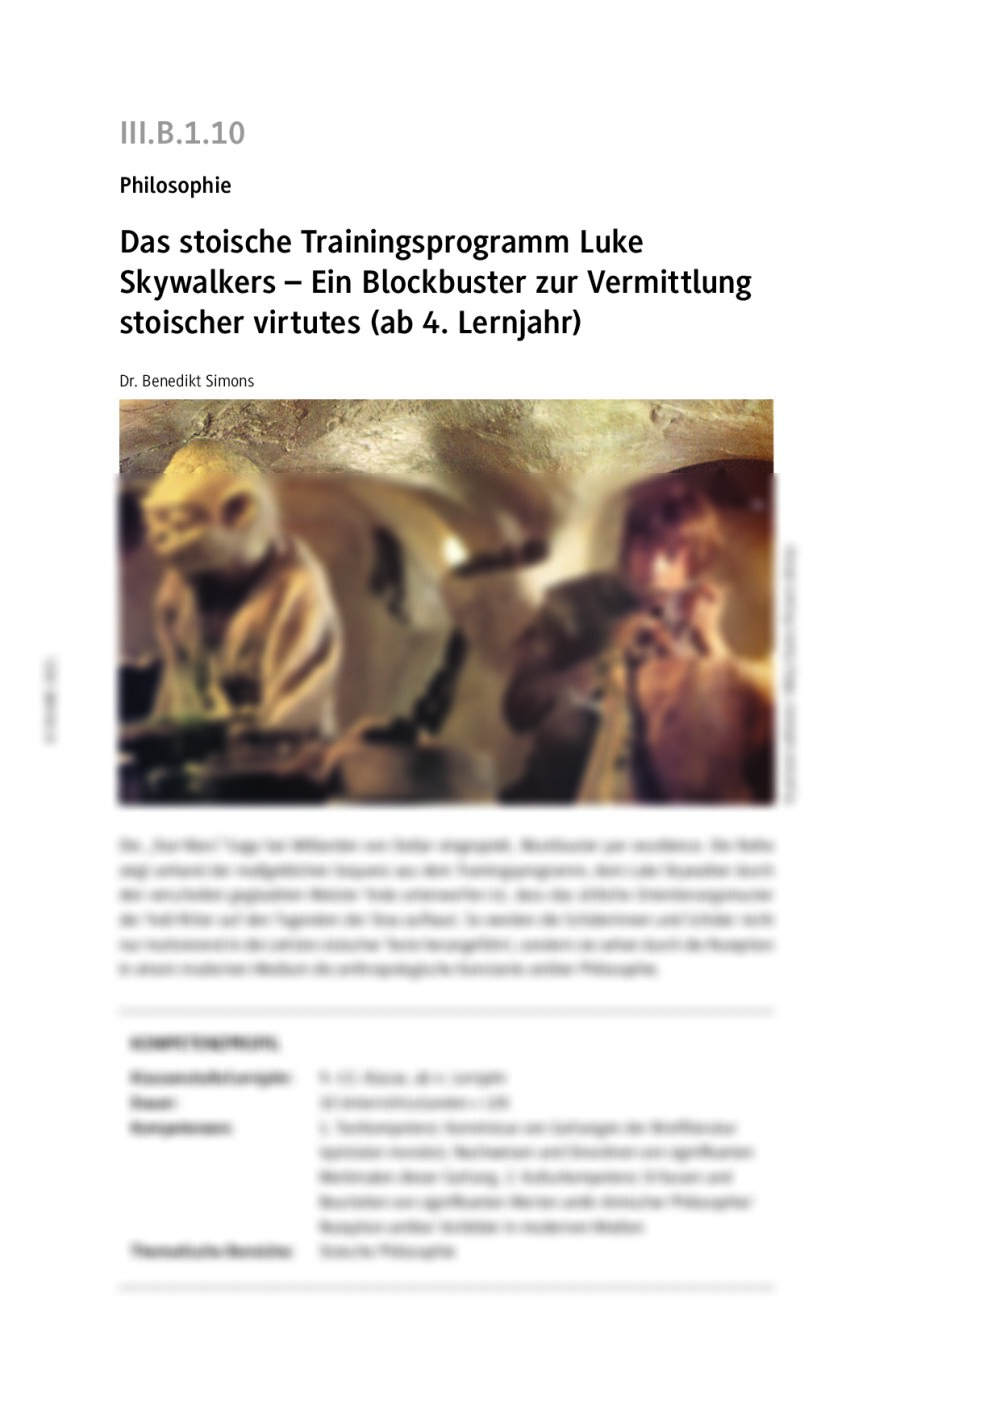 Das stoische Trainingsprogramm Luke Skywalkers - Seite 1